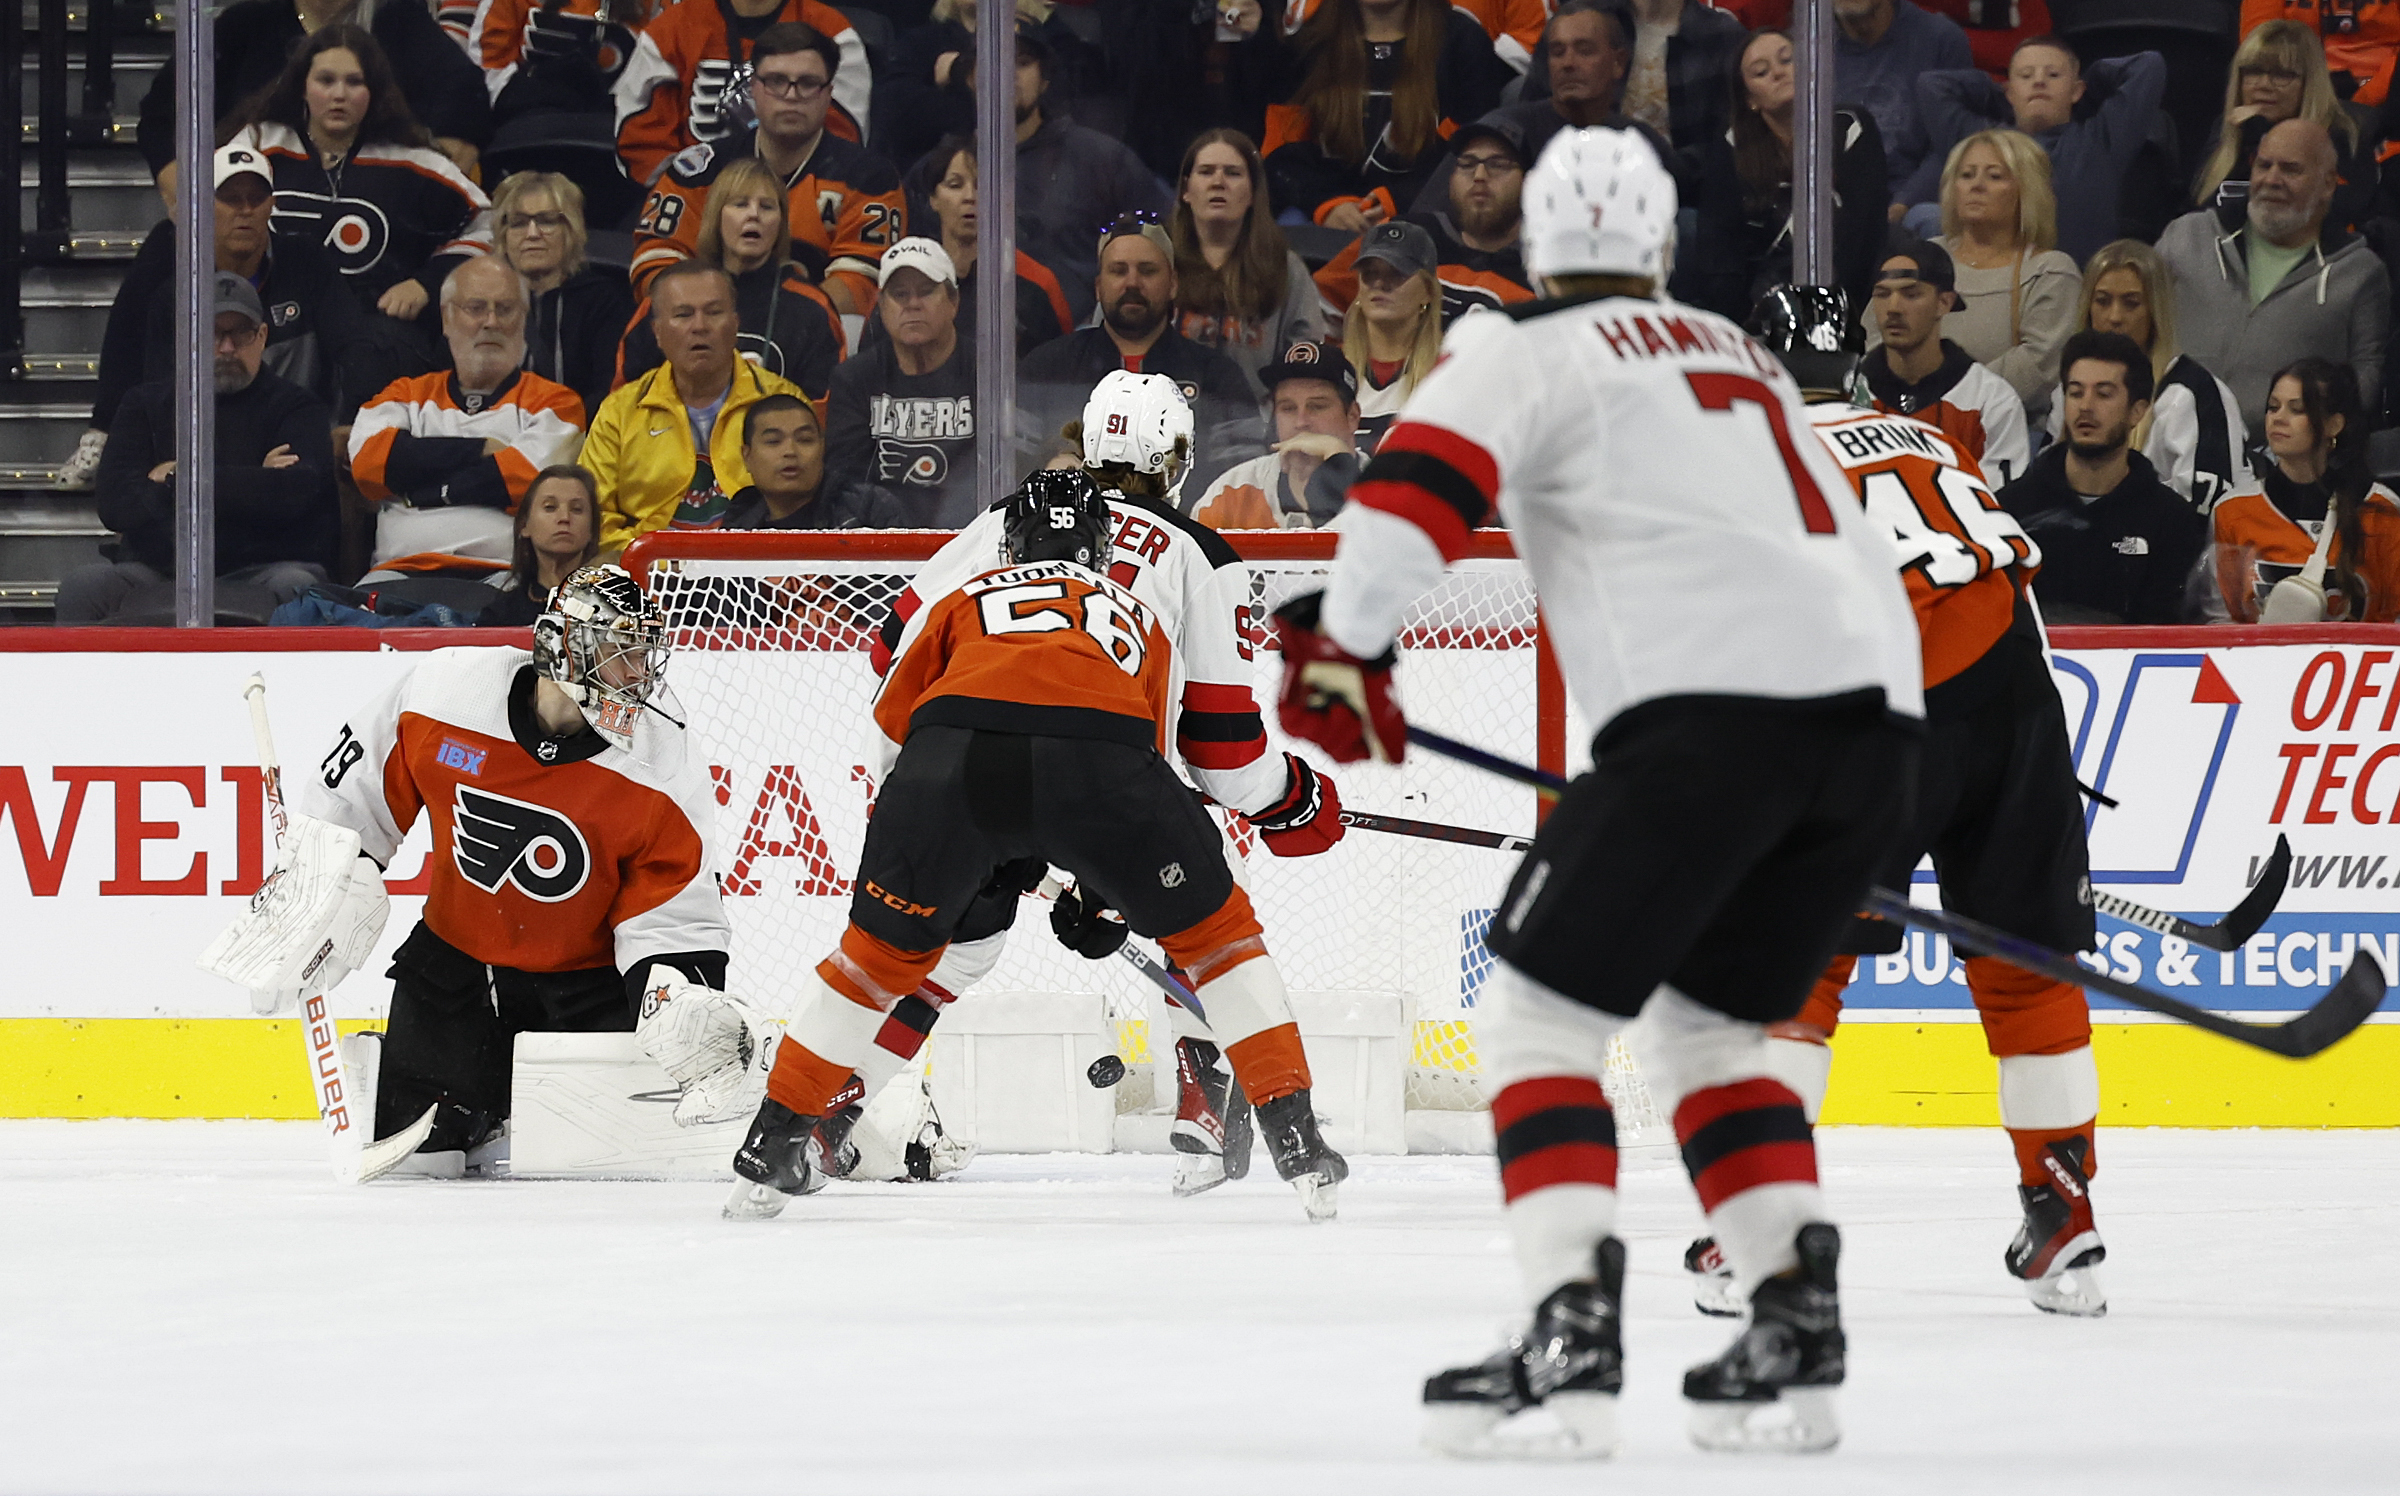 3 Takeaways From New Jersey Devils' 3-2 OT Win vs. Flyers